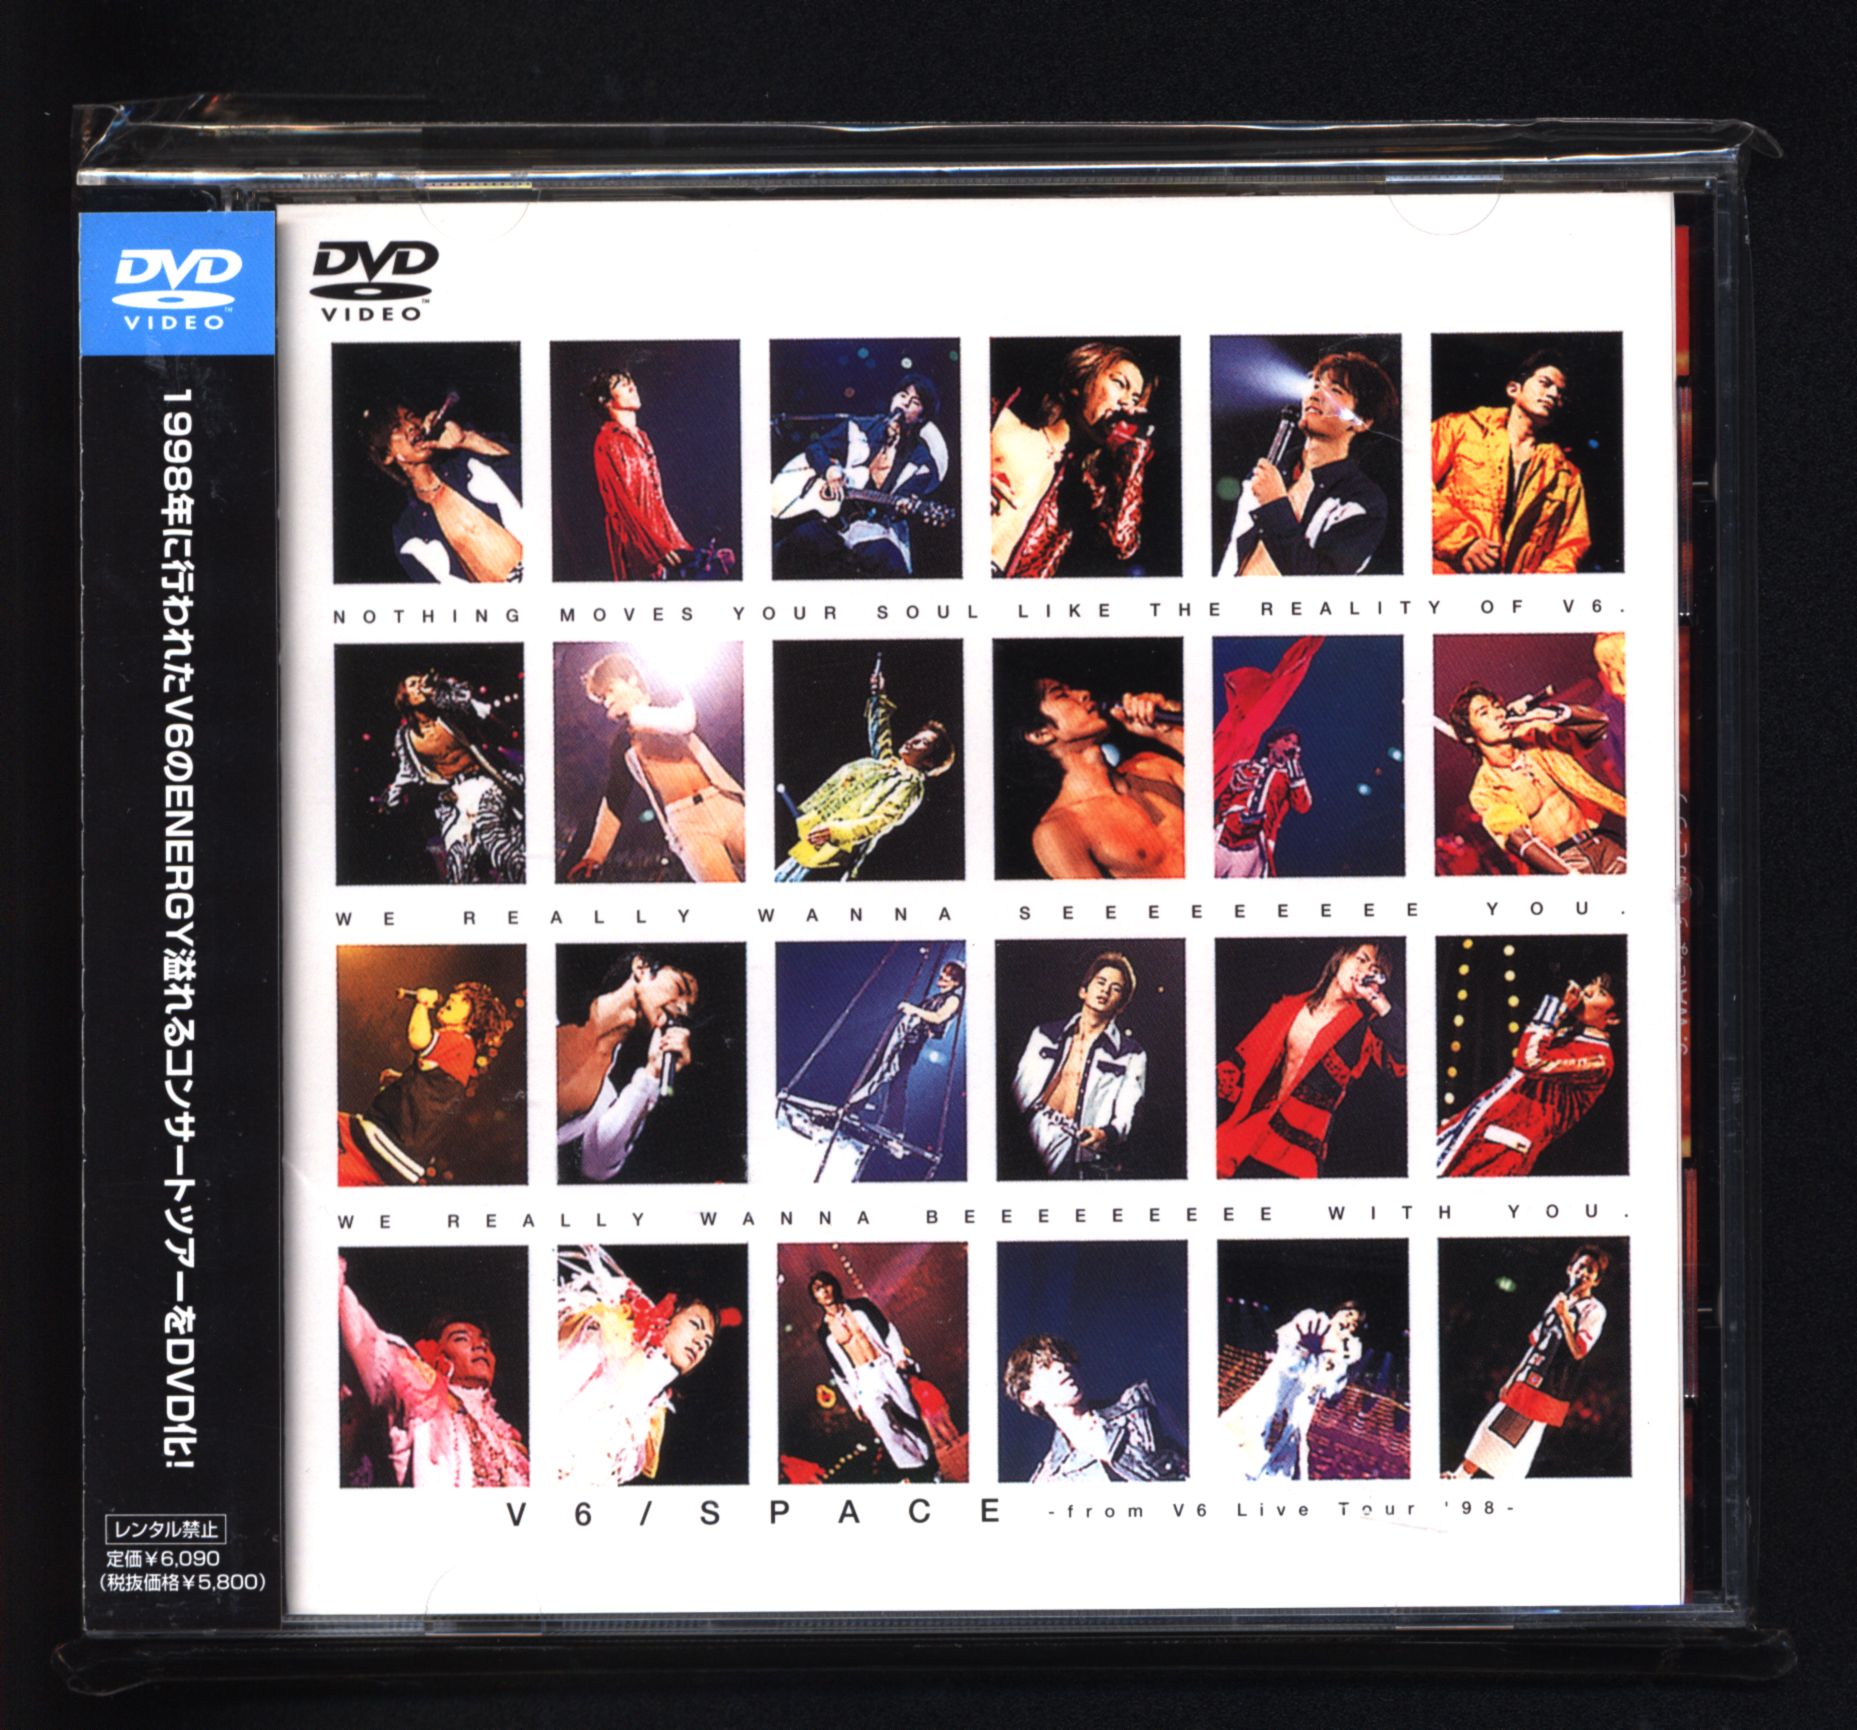 V6 DVD 「SPACE-from V6 Live Tour'98-」 | まんだらけ Mandarake